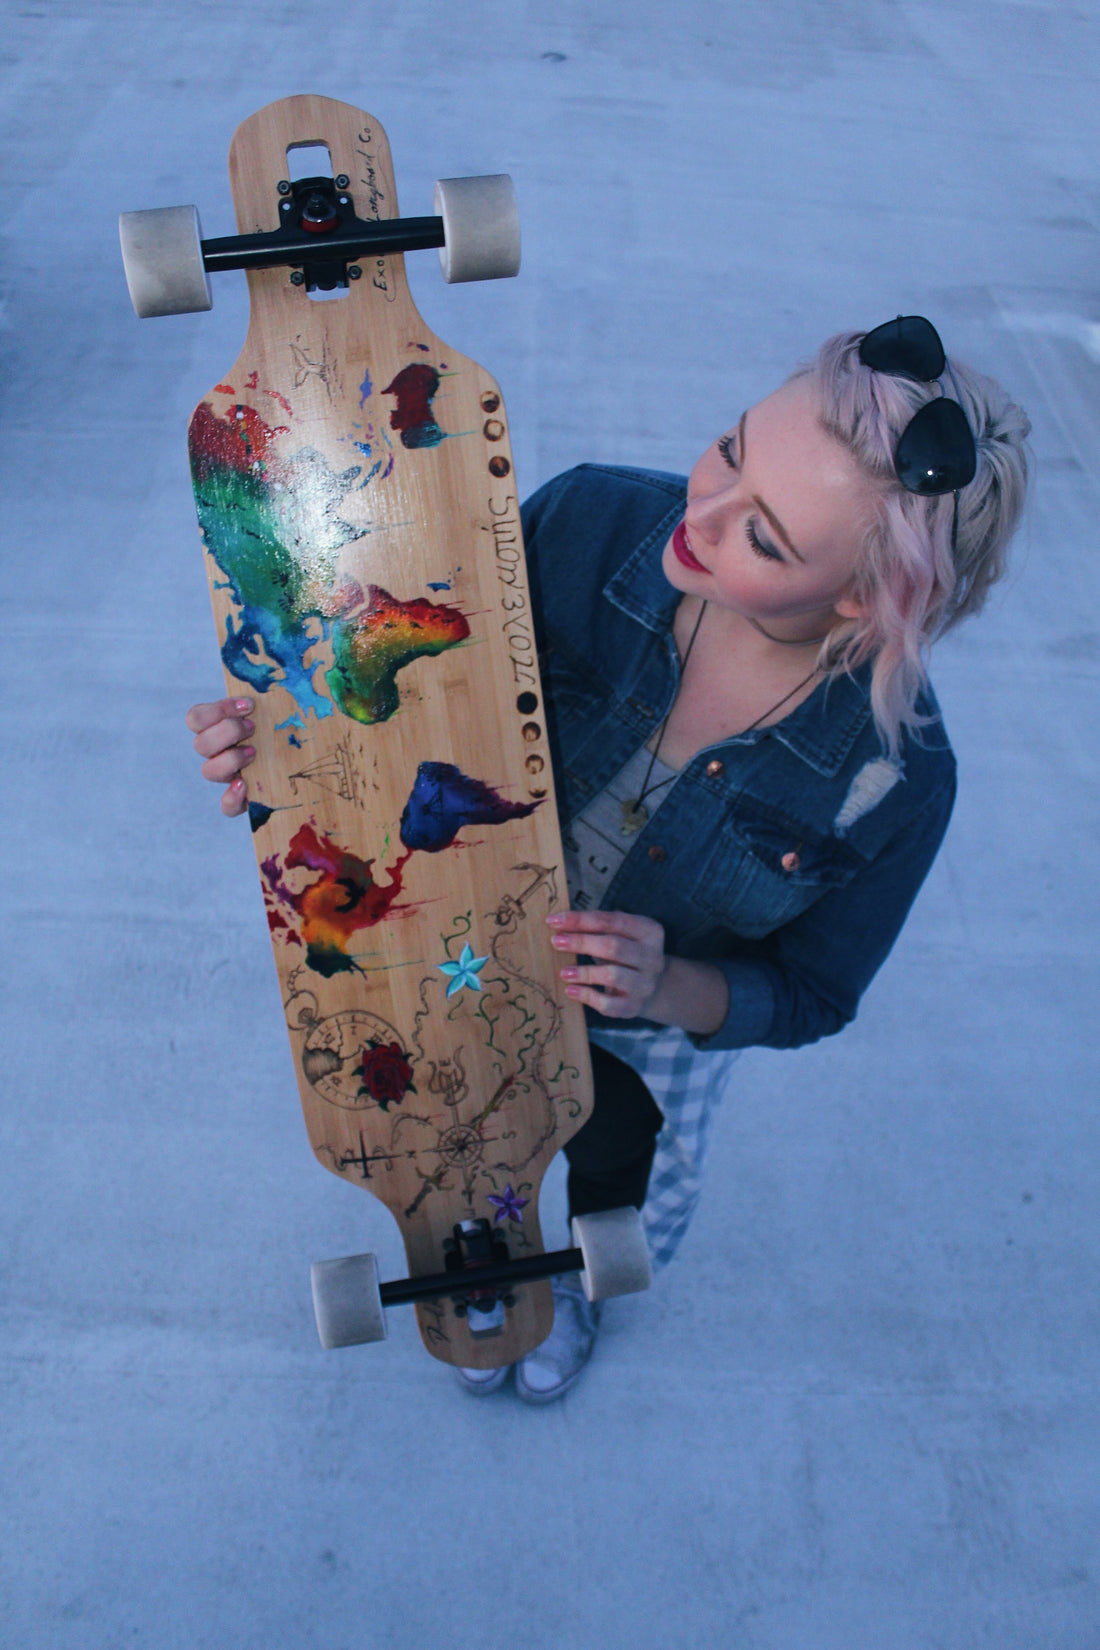 Art Meets Skateboarding: The Rise of Skateboard Art